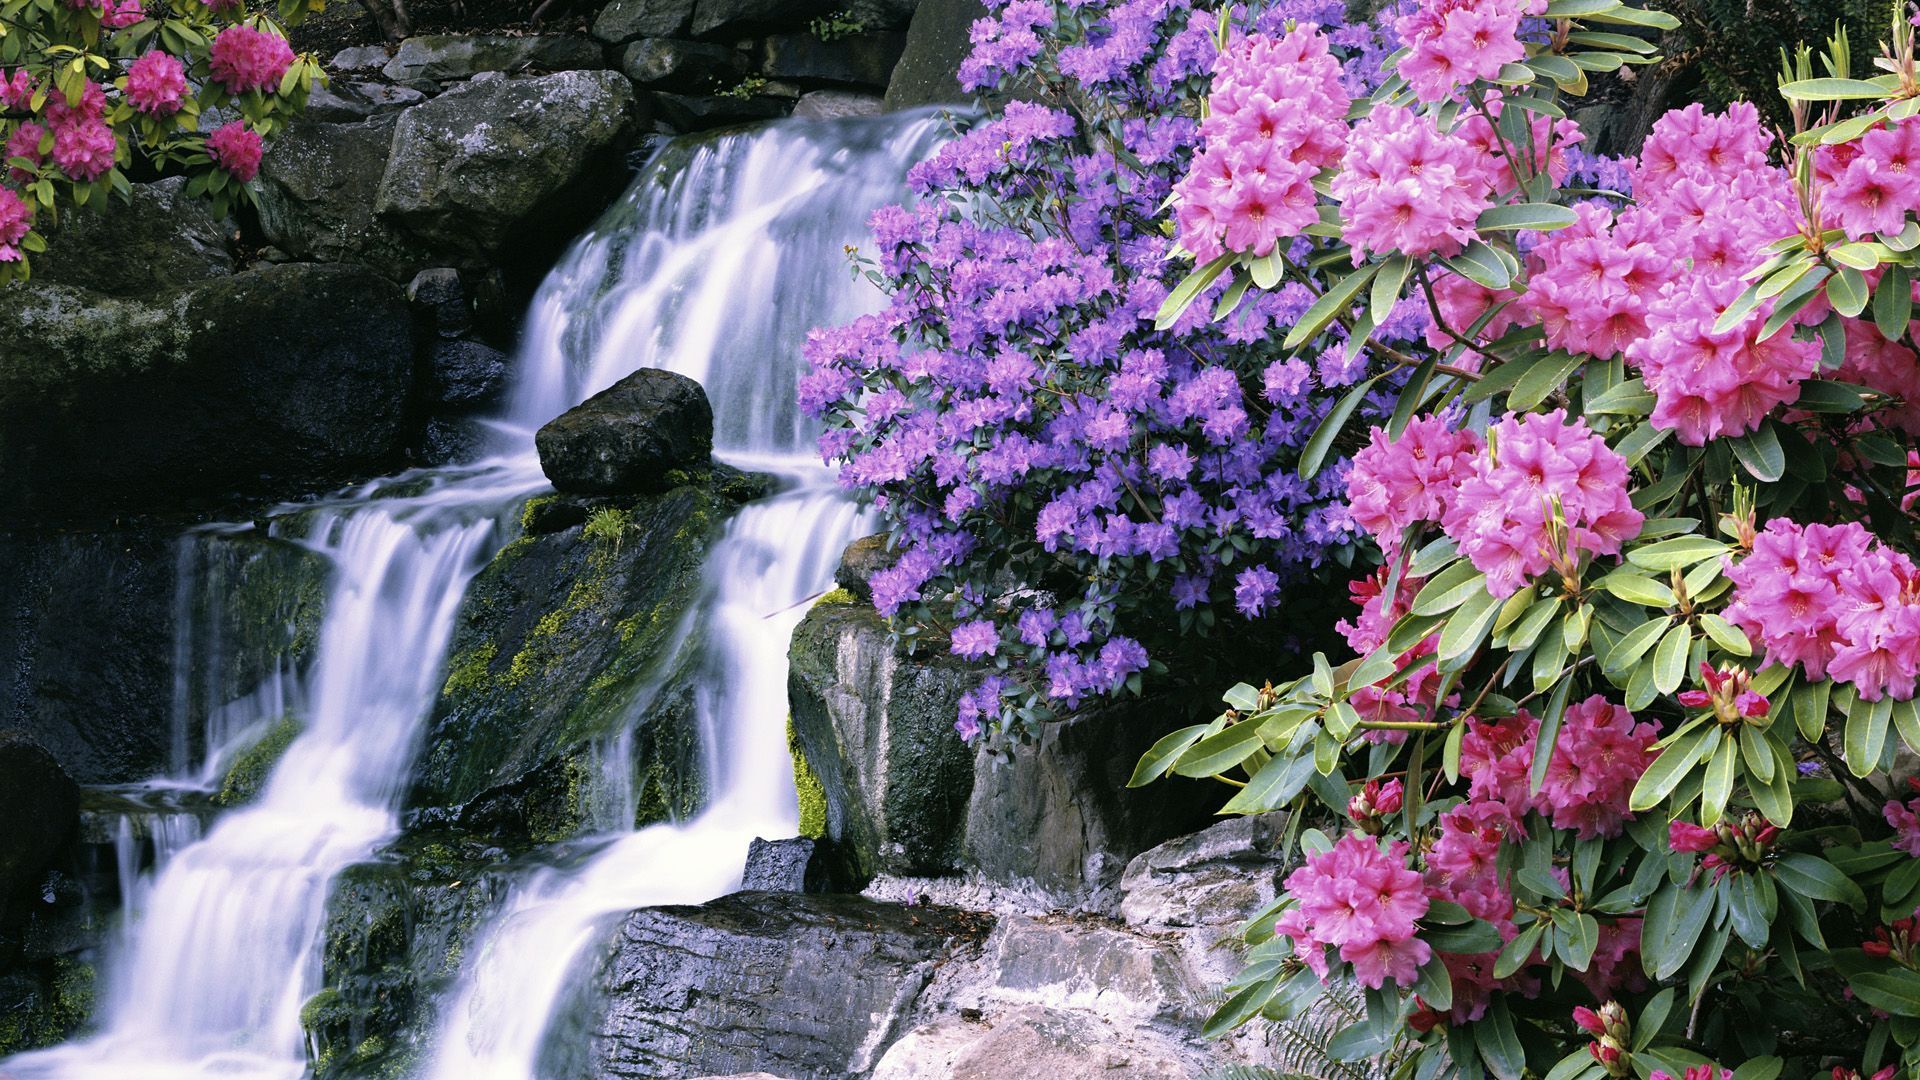 Lovely Waterfall Wallpaper 45365 1920x1080 px. Waterfall scenery, Garden waterfall, Waterfall